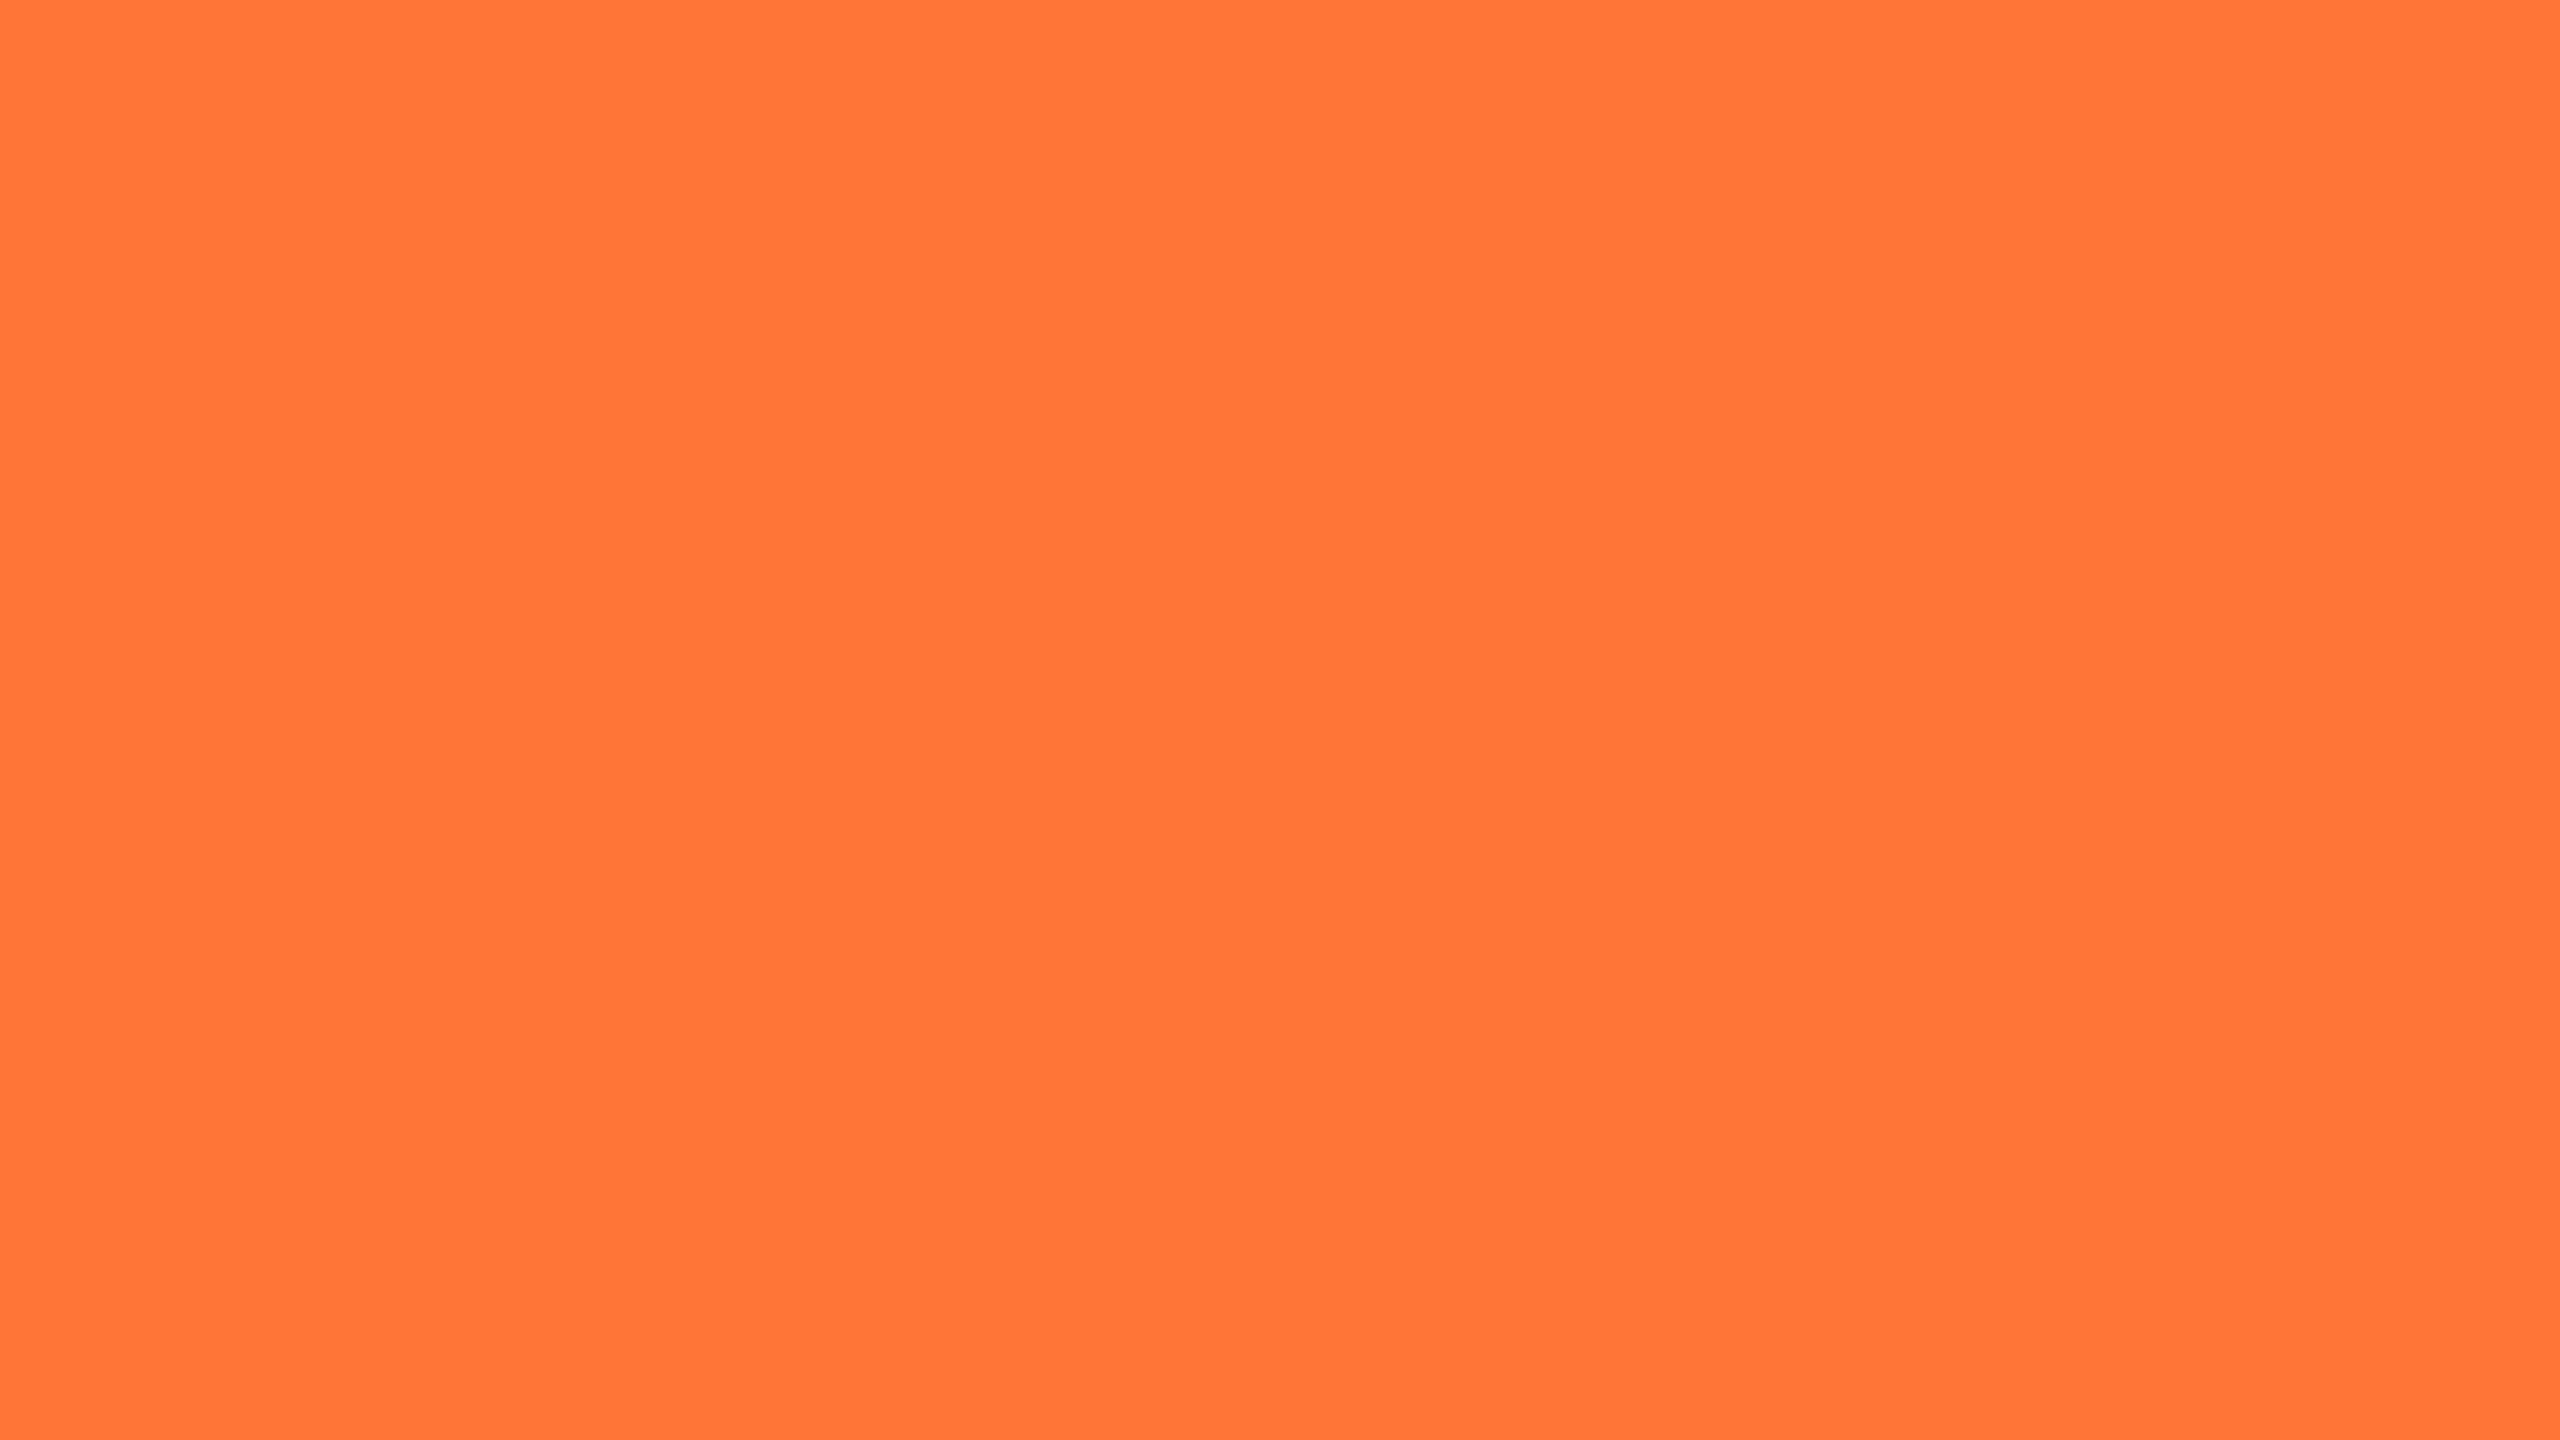 2560x1440 Orange Crayola Solid Color Background